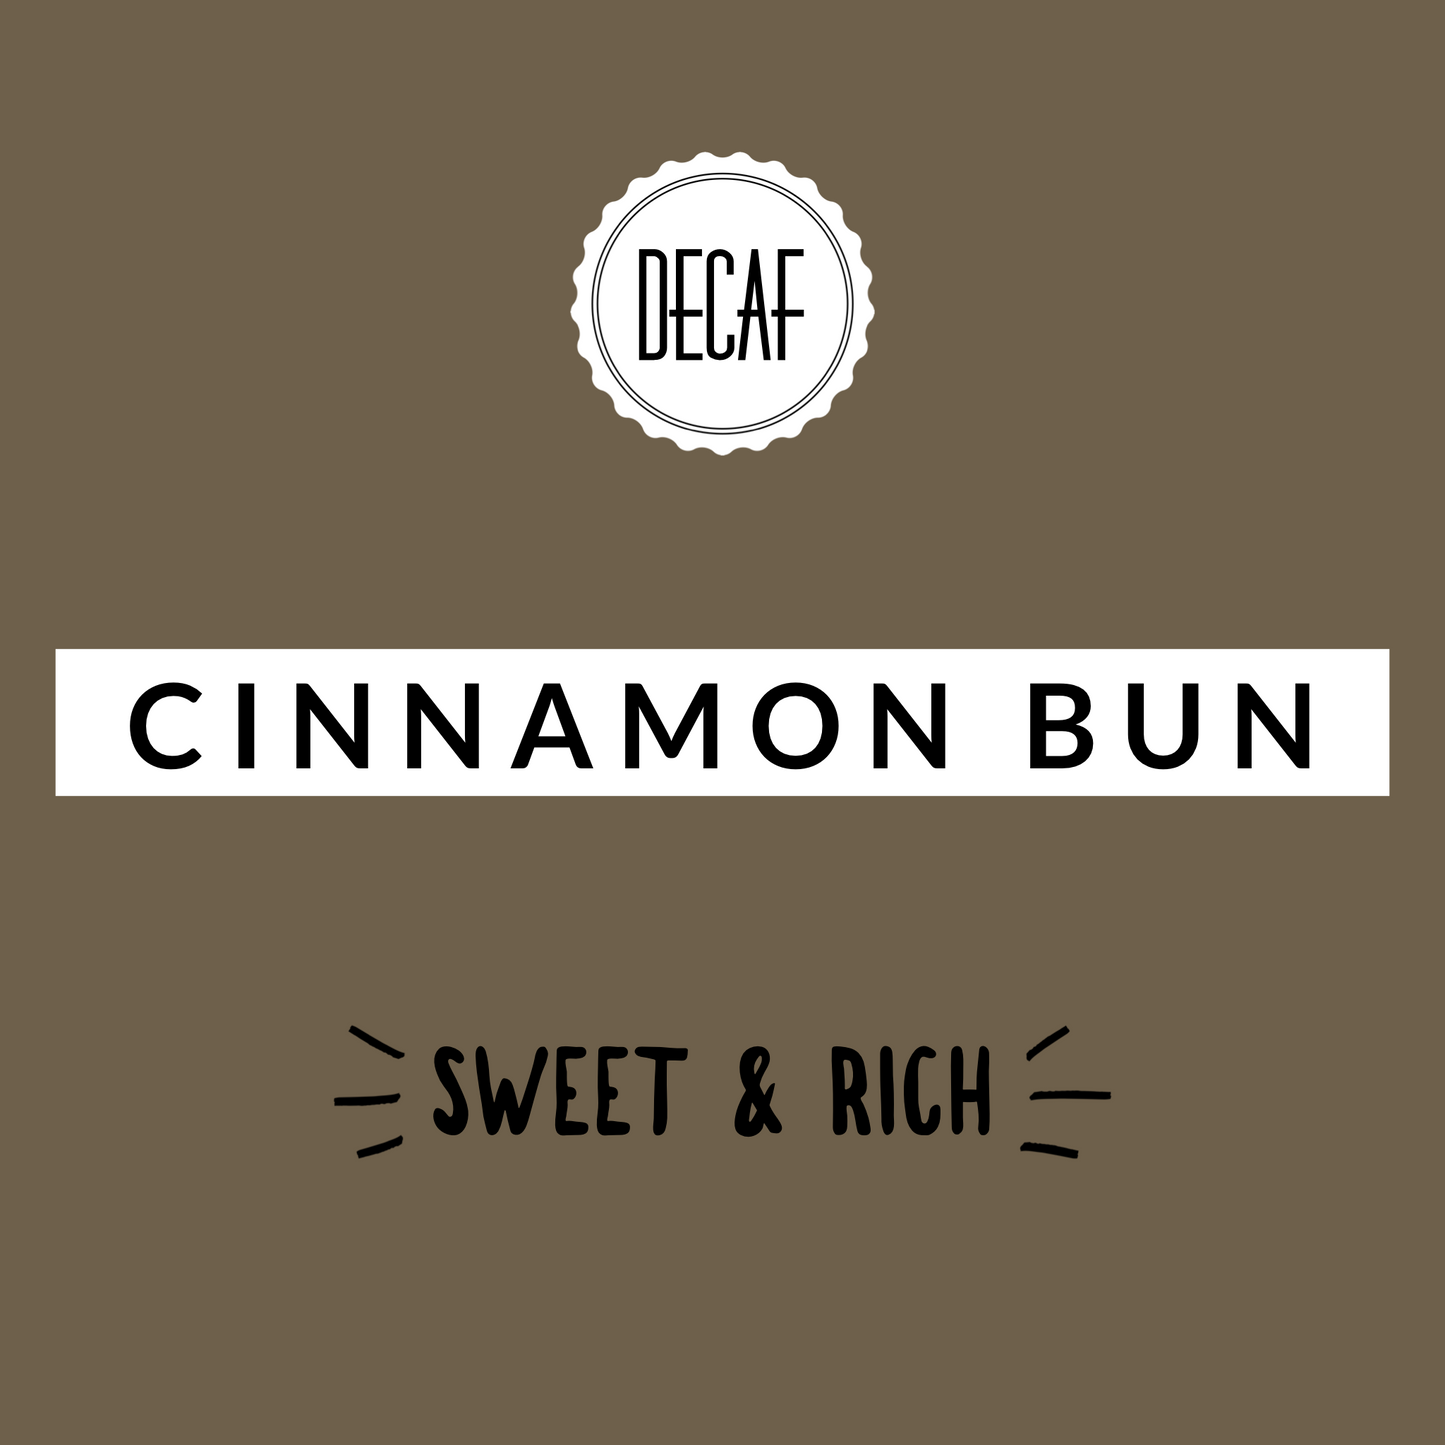 Cinnamon Bun Decaf